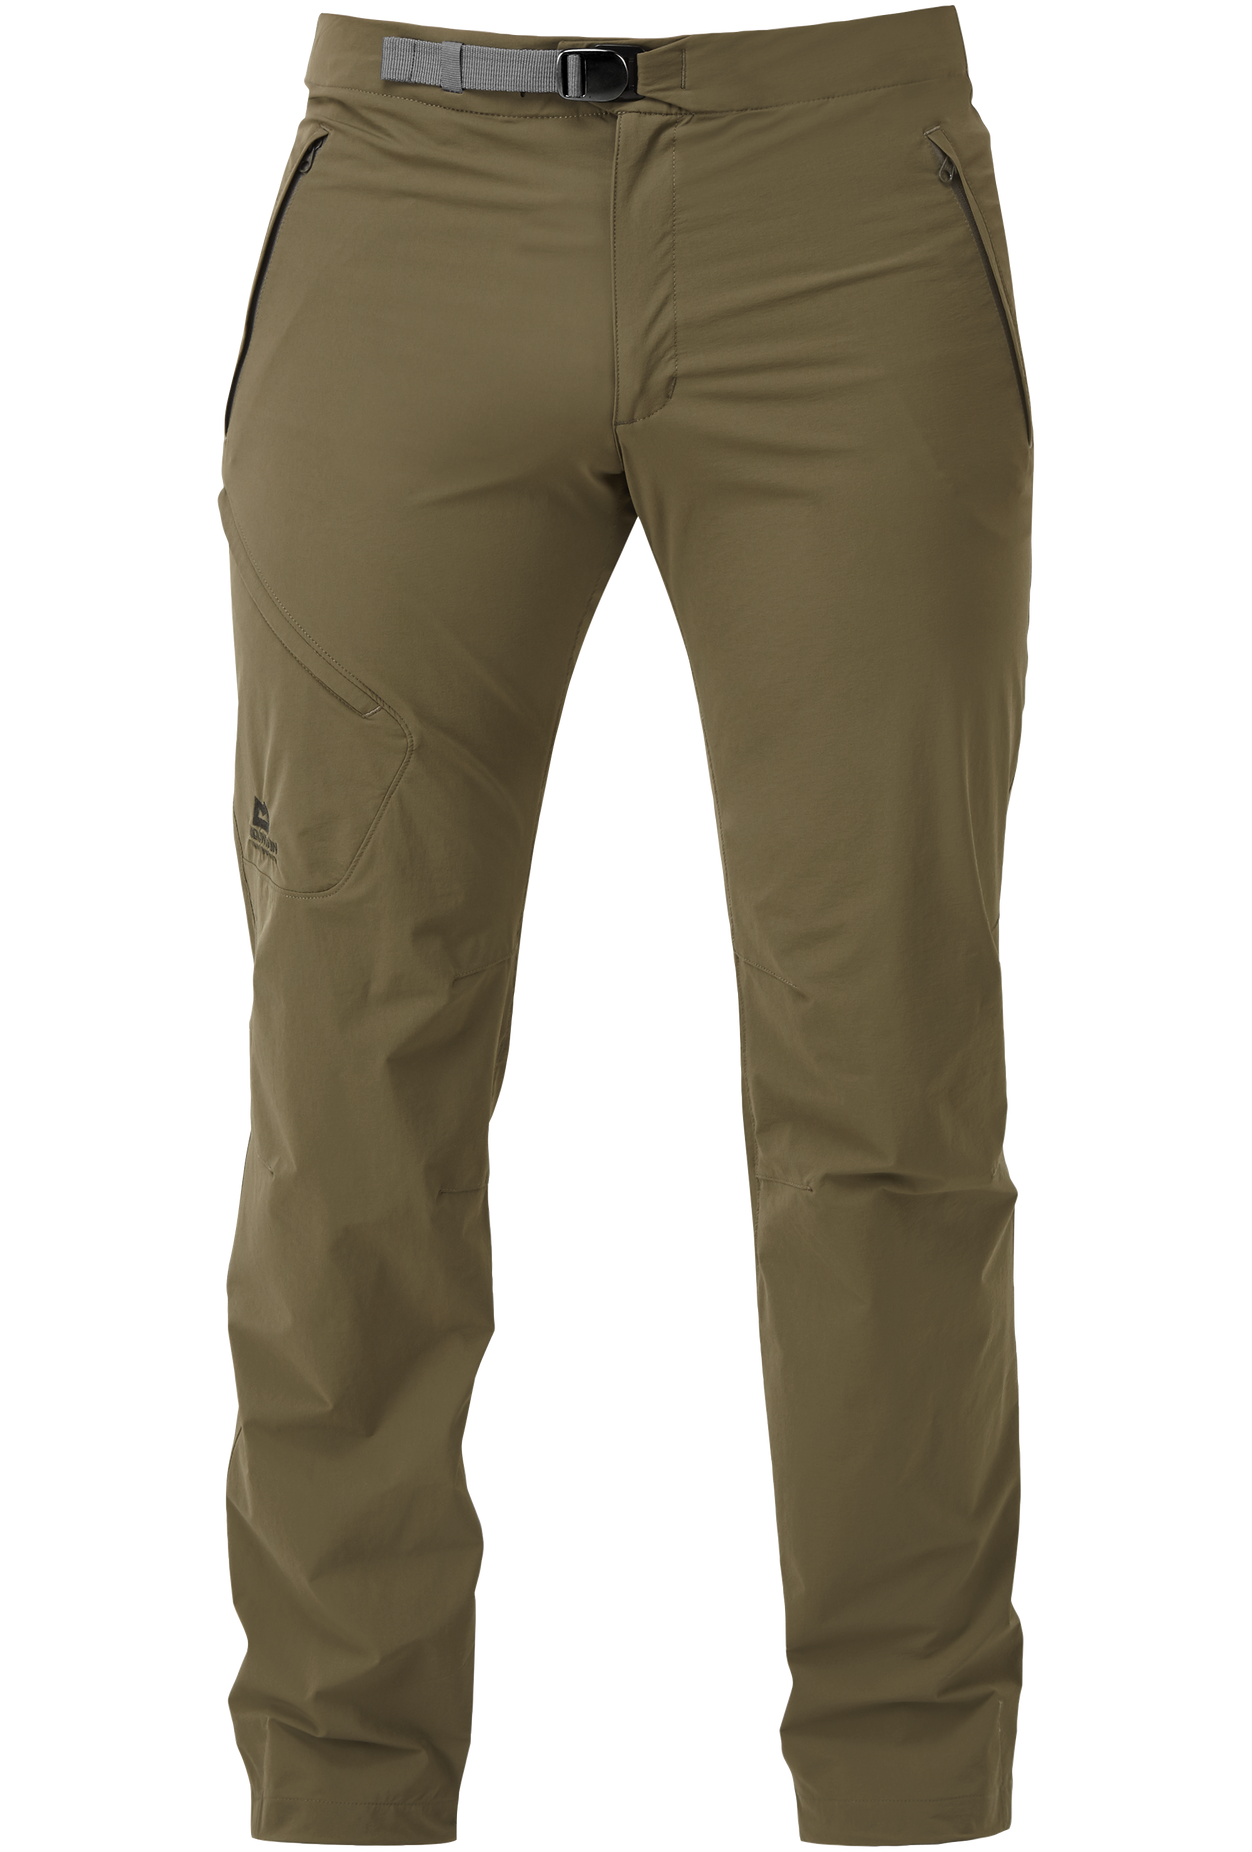 Mountain Equipment pánské softshellové kalhoty Comici Pant - zkrácené Barva: Mudstone, Velikost: 36/XL